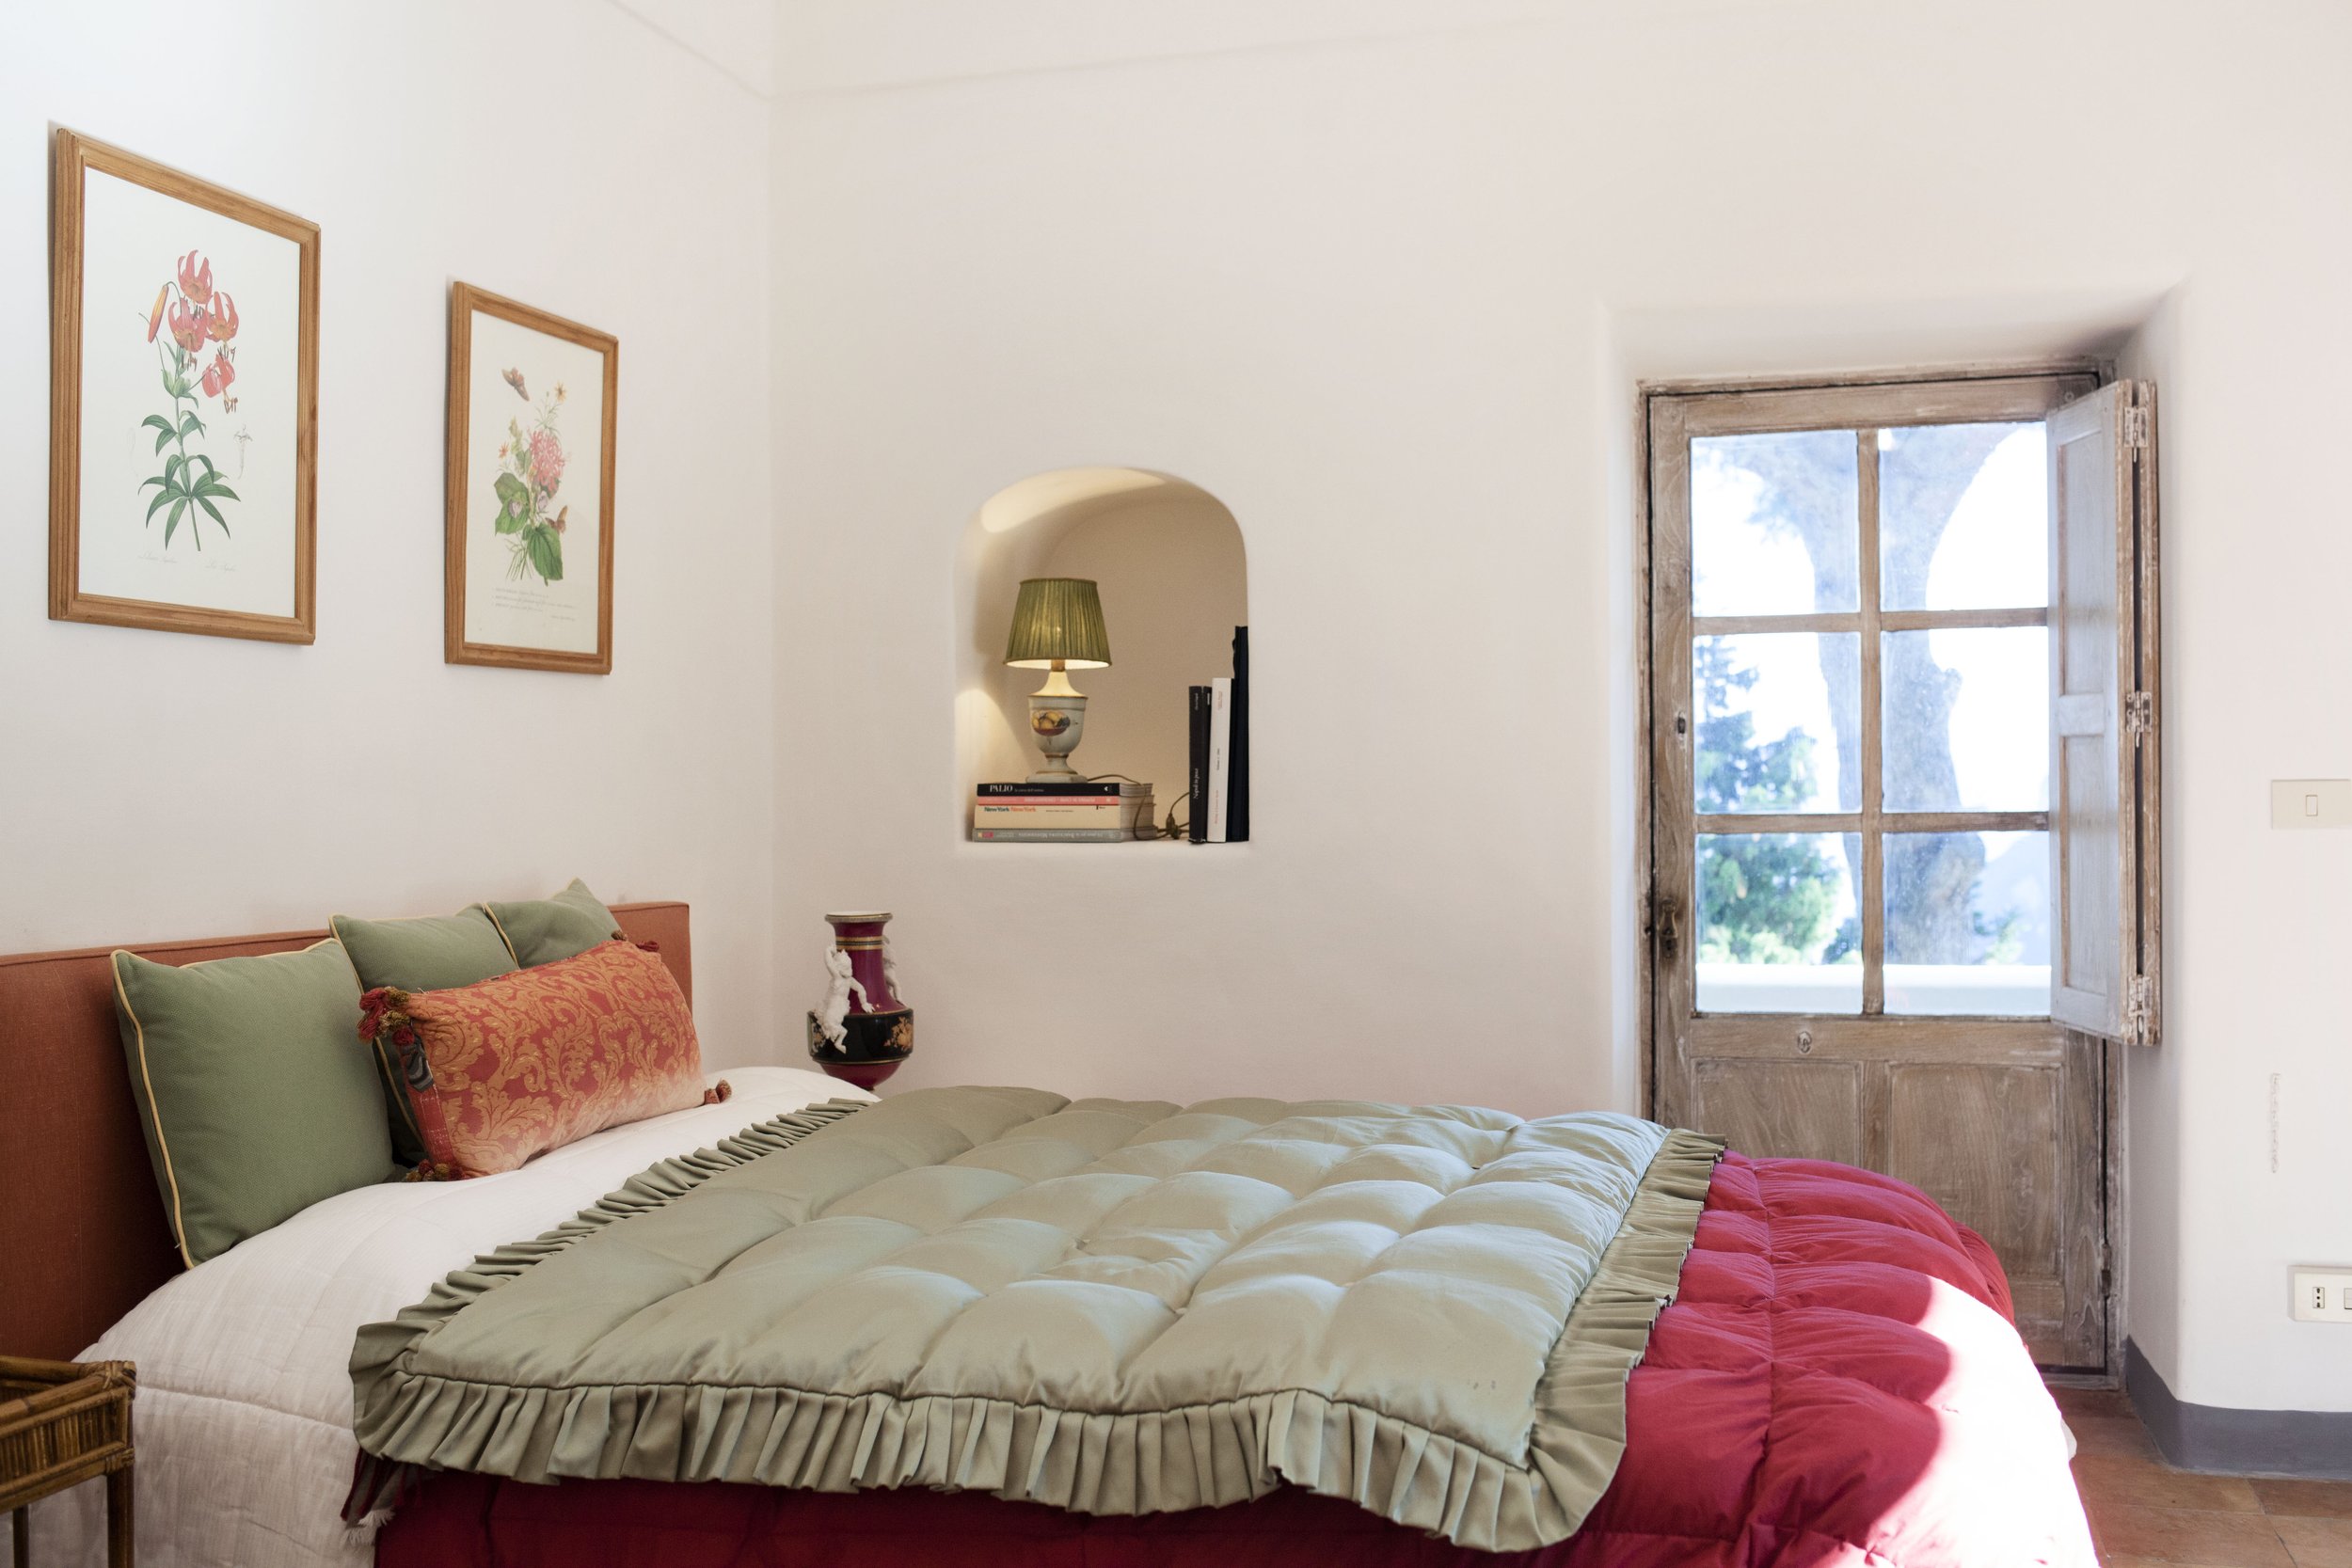 Francis York Villa Aiano Exclusive Luxury Villa Rental in Capri Slim Aarons 3.jpg